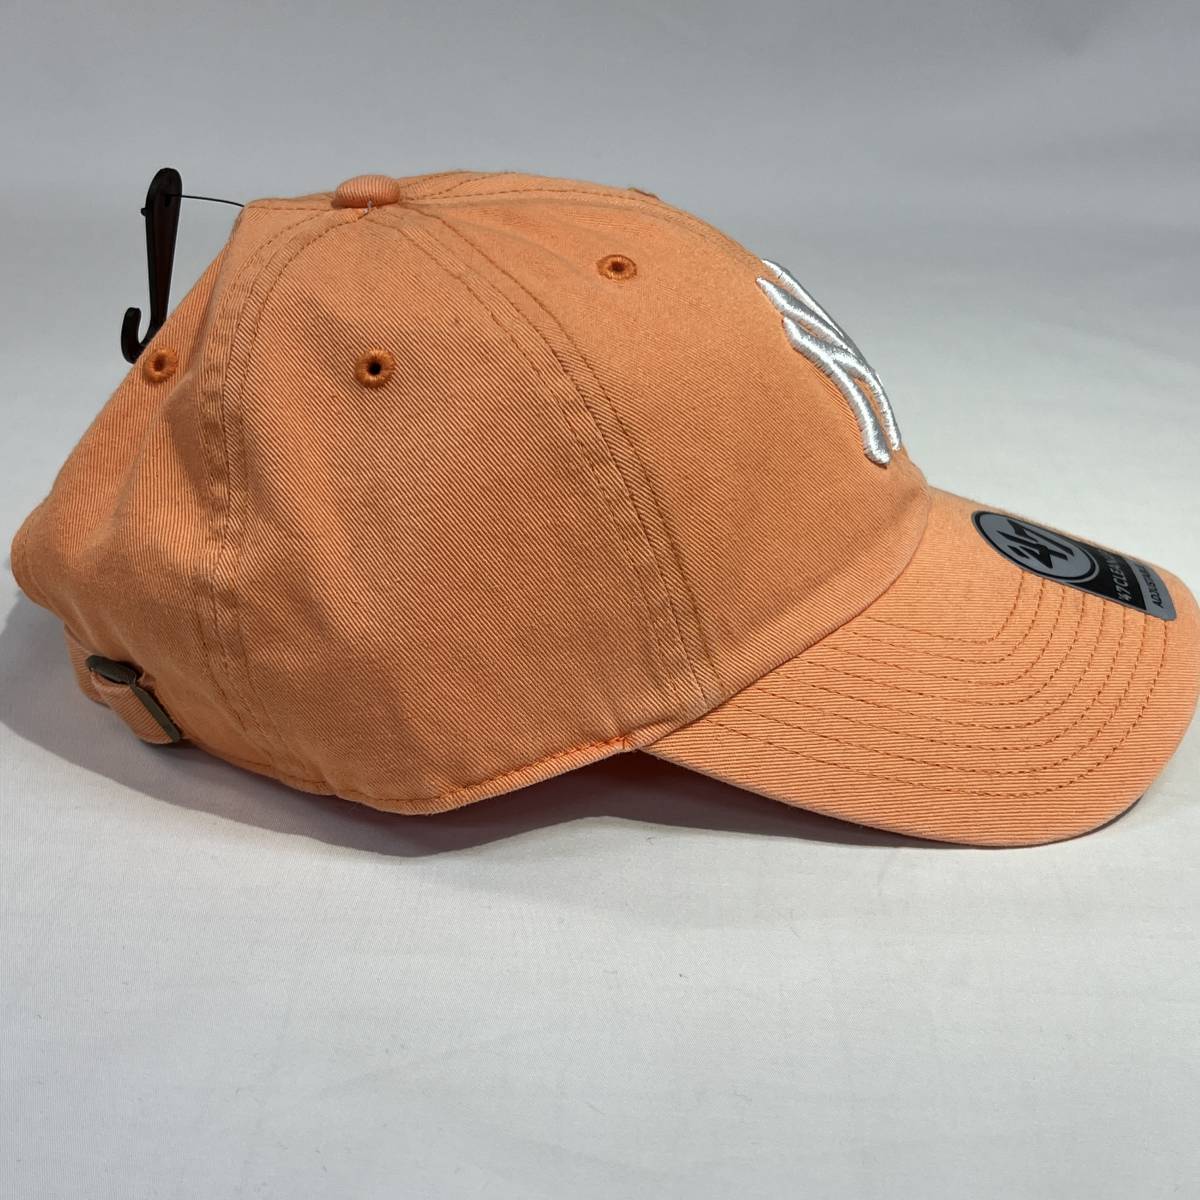 【新品】47 CLEAN UP ニューヨーク ヤンキース オレンジ マンゴー NY Yankees Orenge Mango CAP キャップ 帽子 _画像3